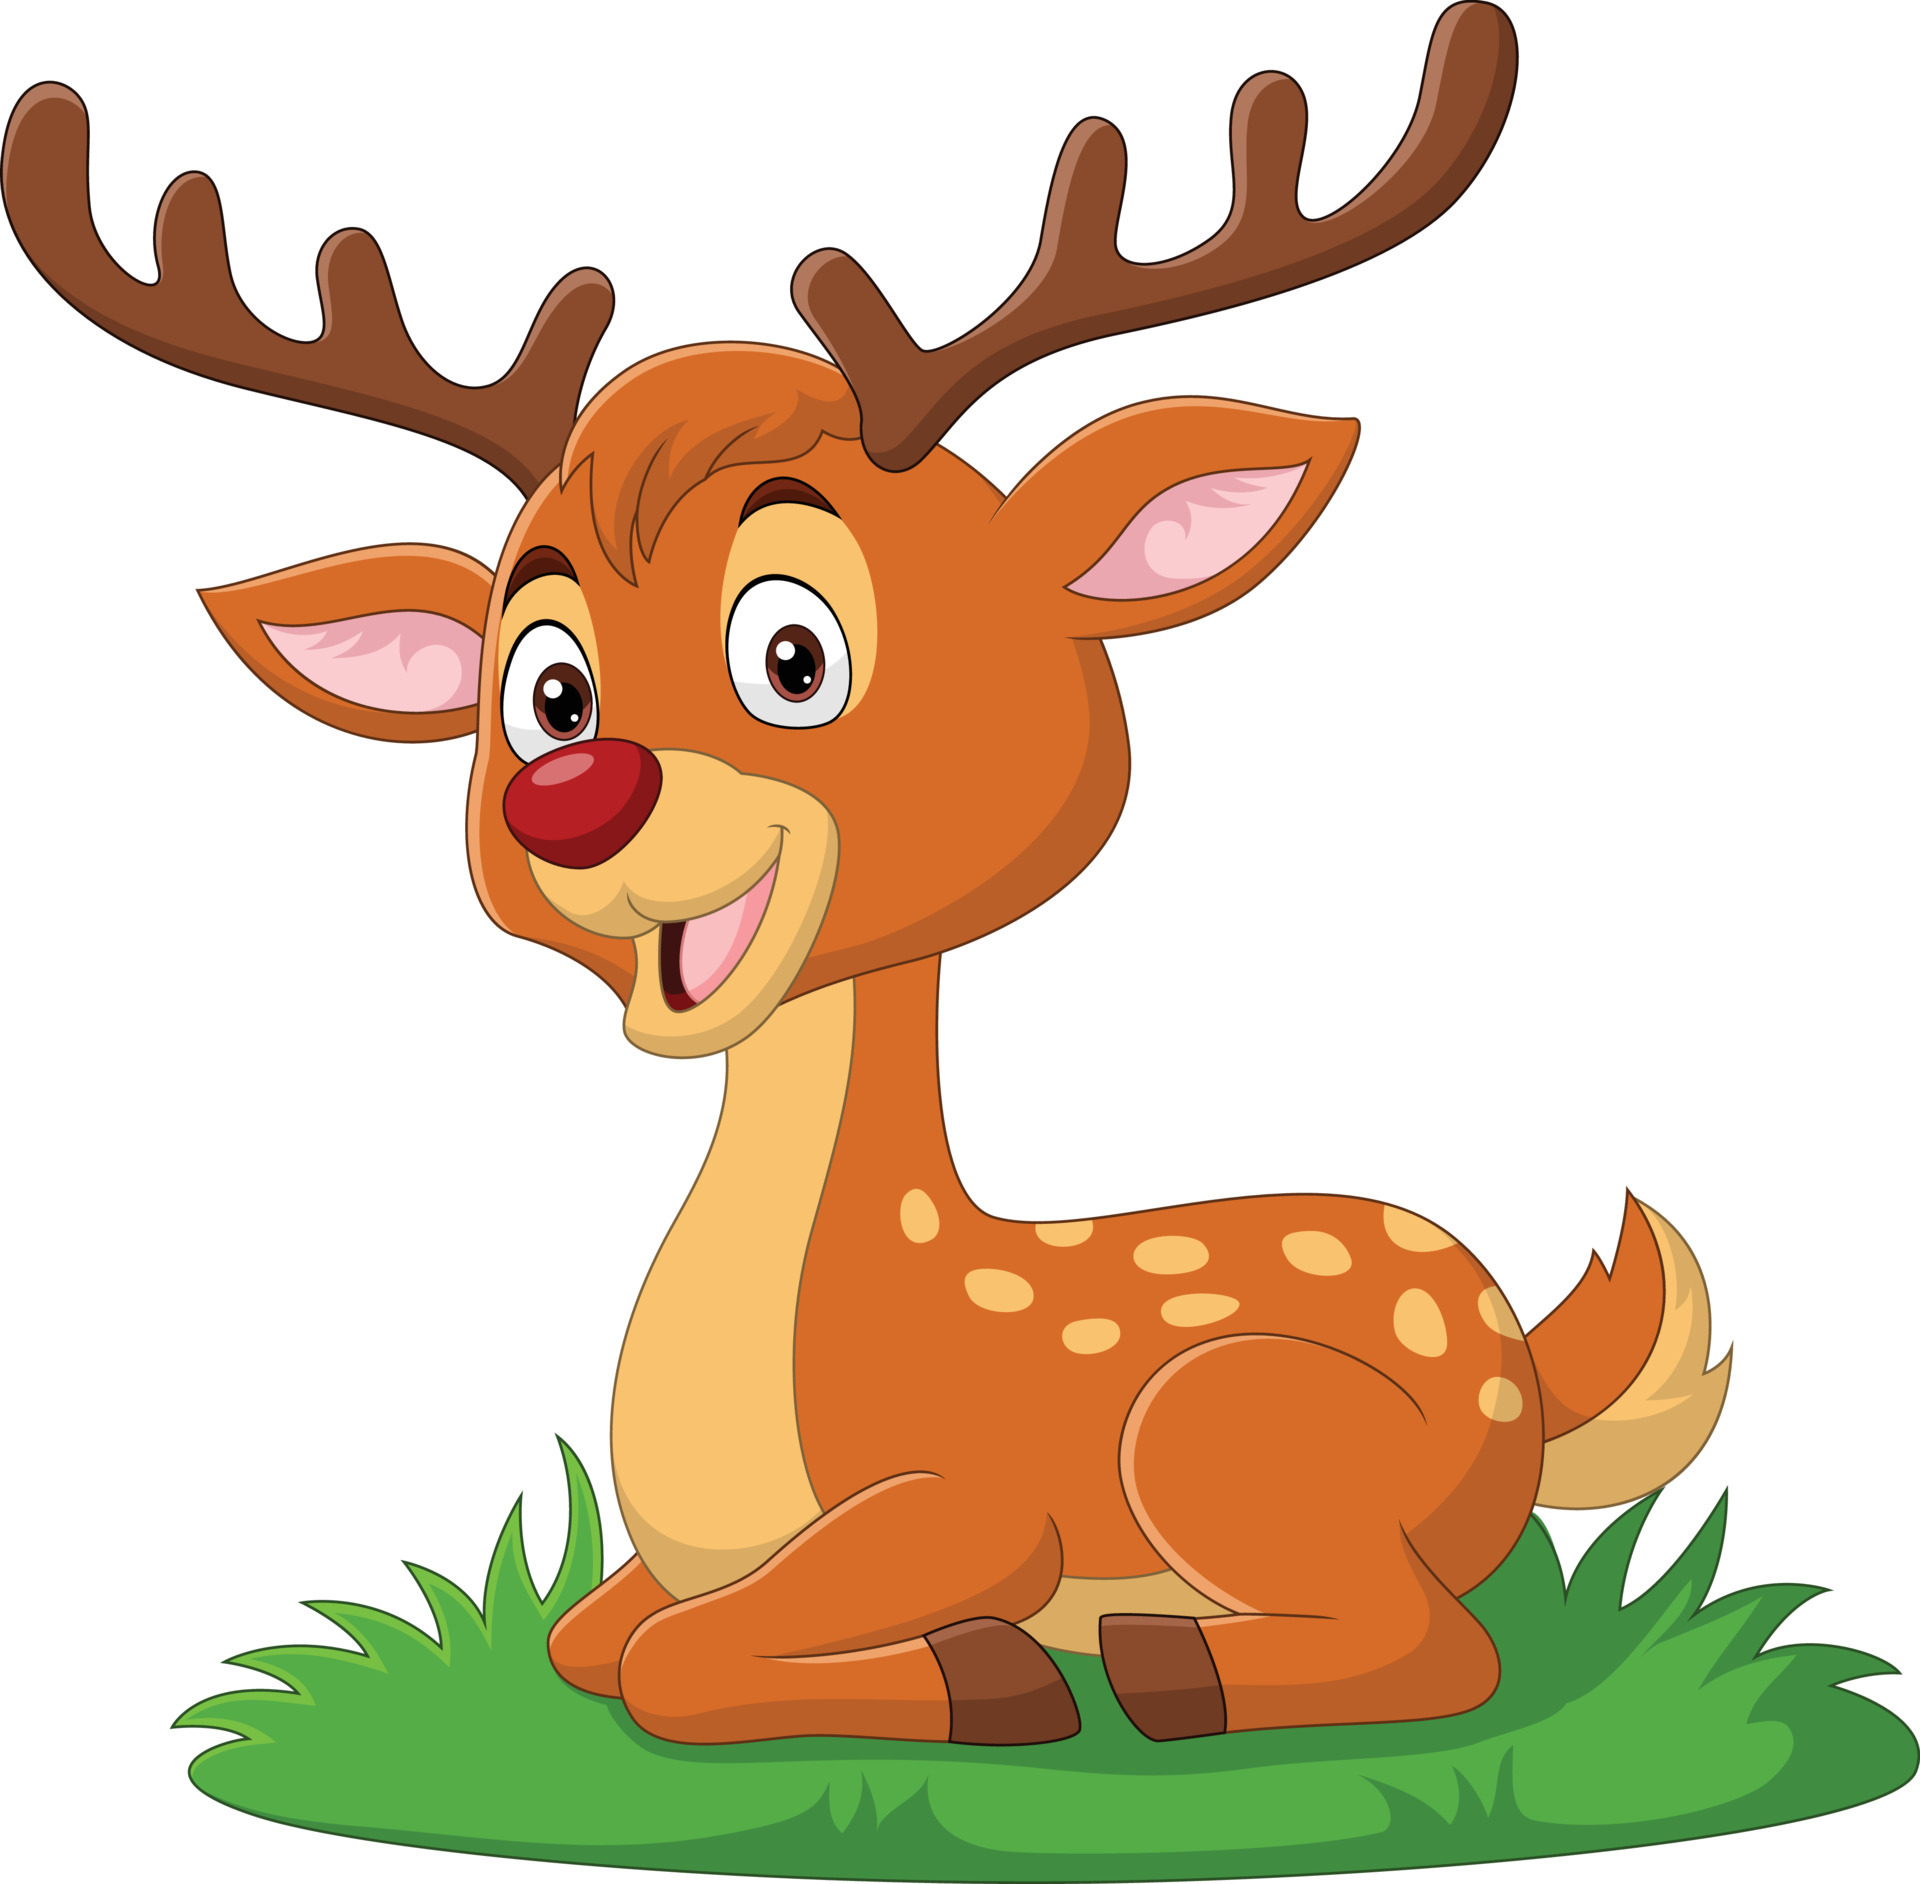 Cartoon cute little deer sitting in the grass 7152981 Vector Art at Vecteezy